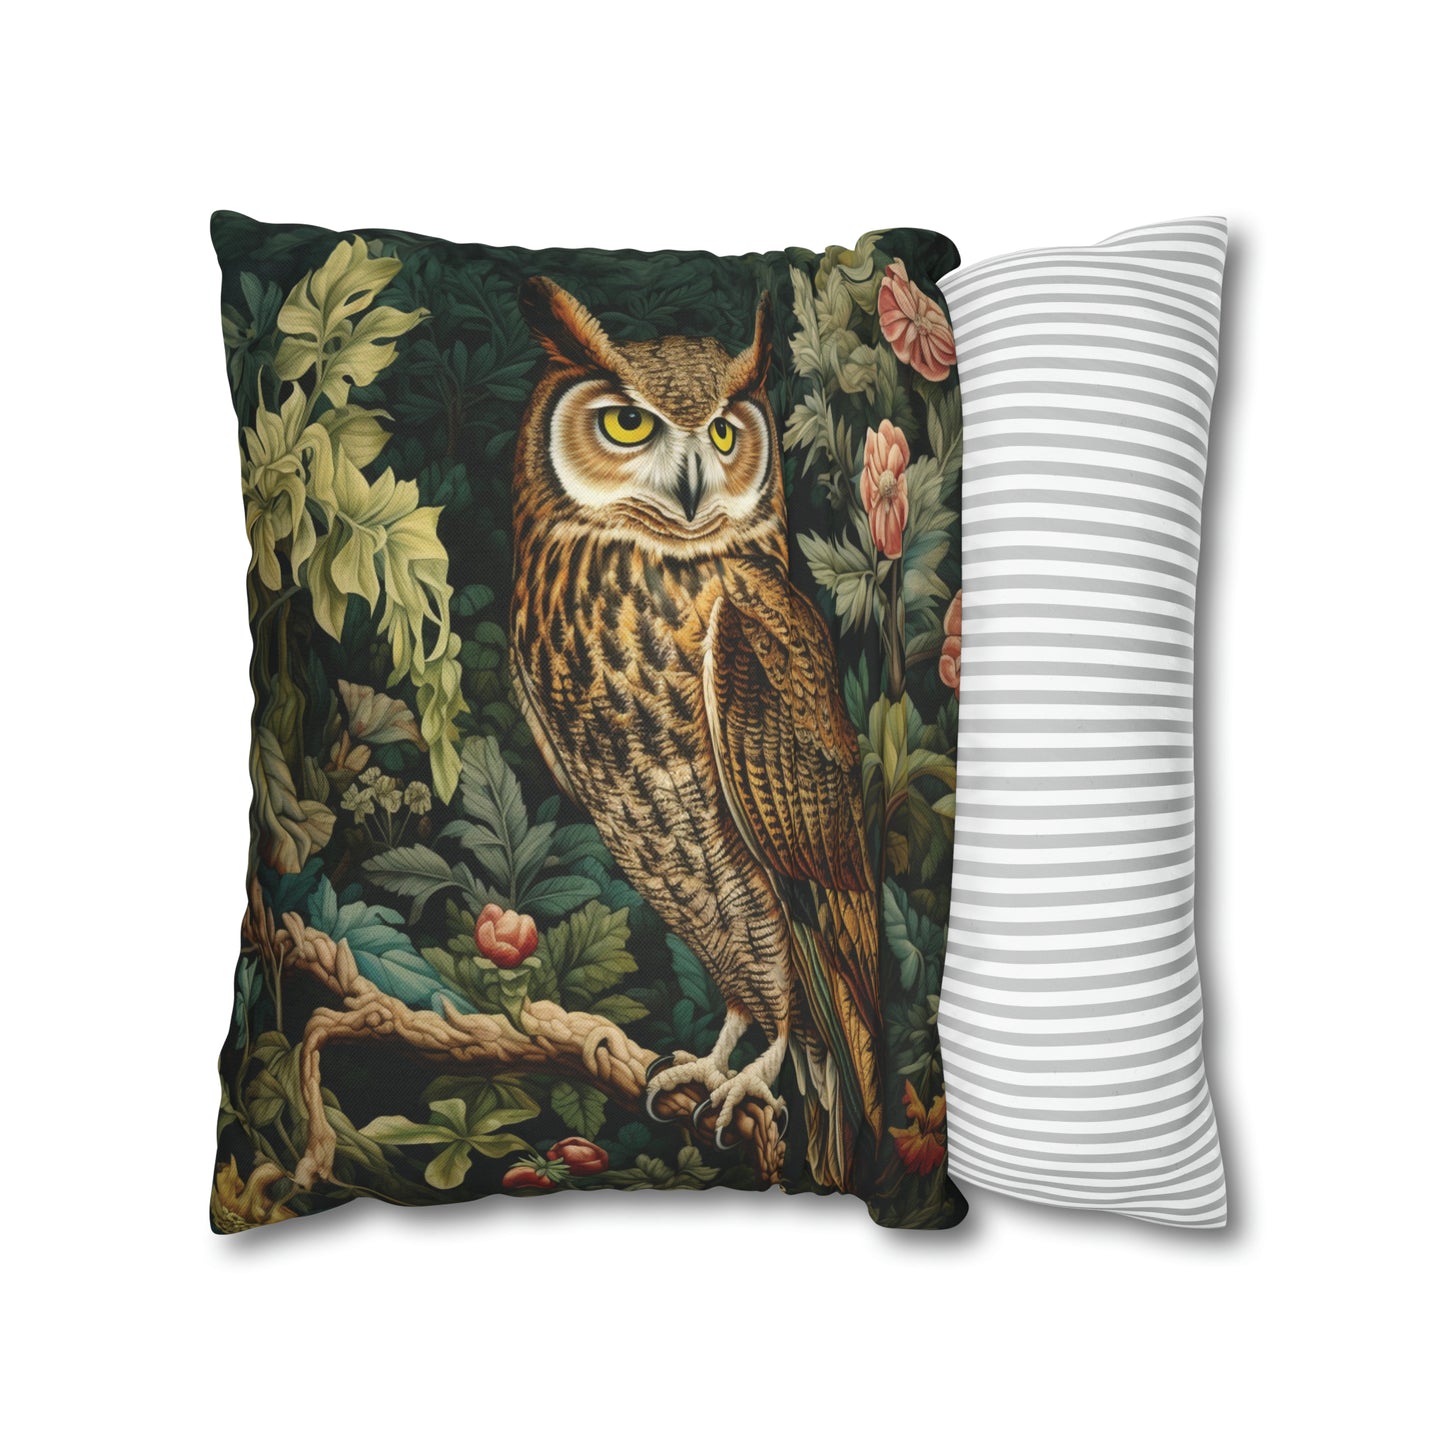 Twilight Vigil Owl Pillow William Morris Inspired